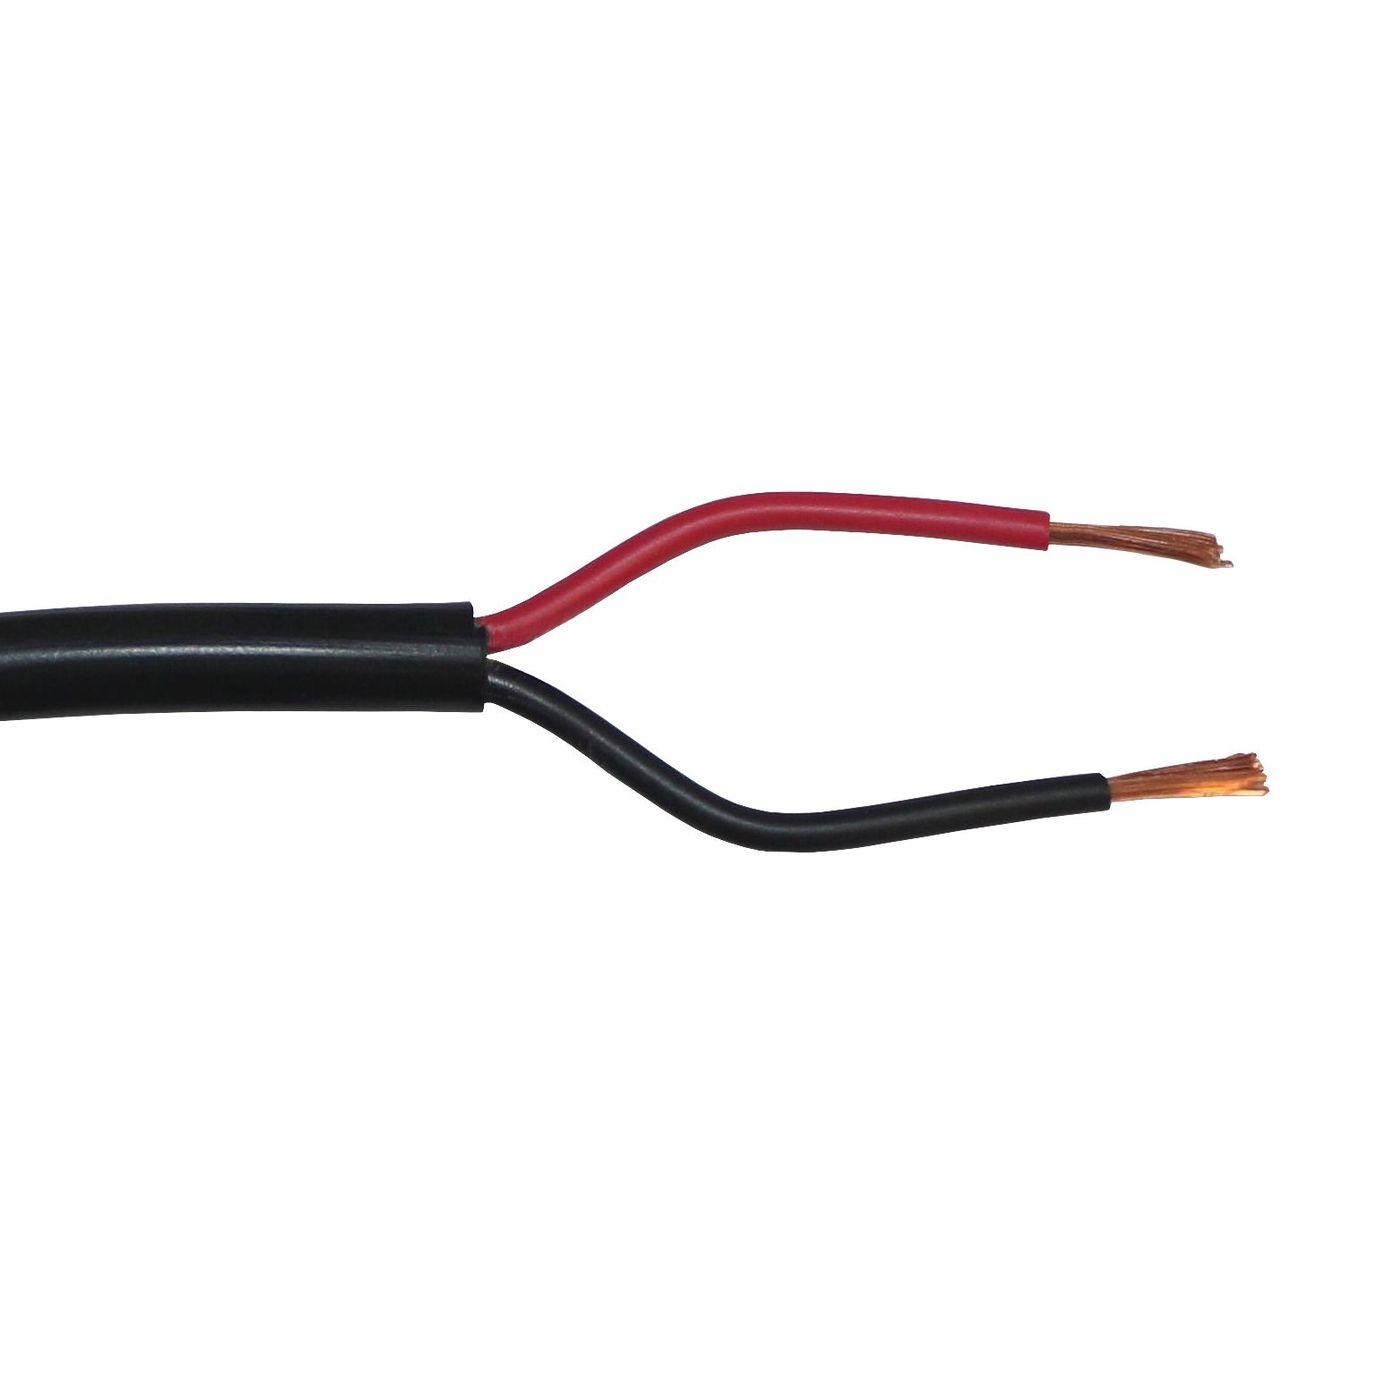 Fahrzeugleitung Anhängerkabel Rund oder Flach Kabel rot/schwarz 2X